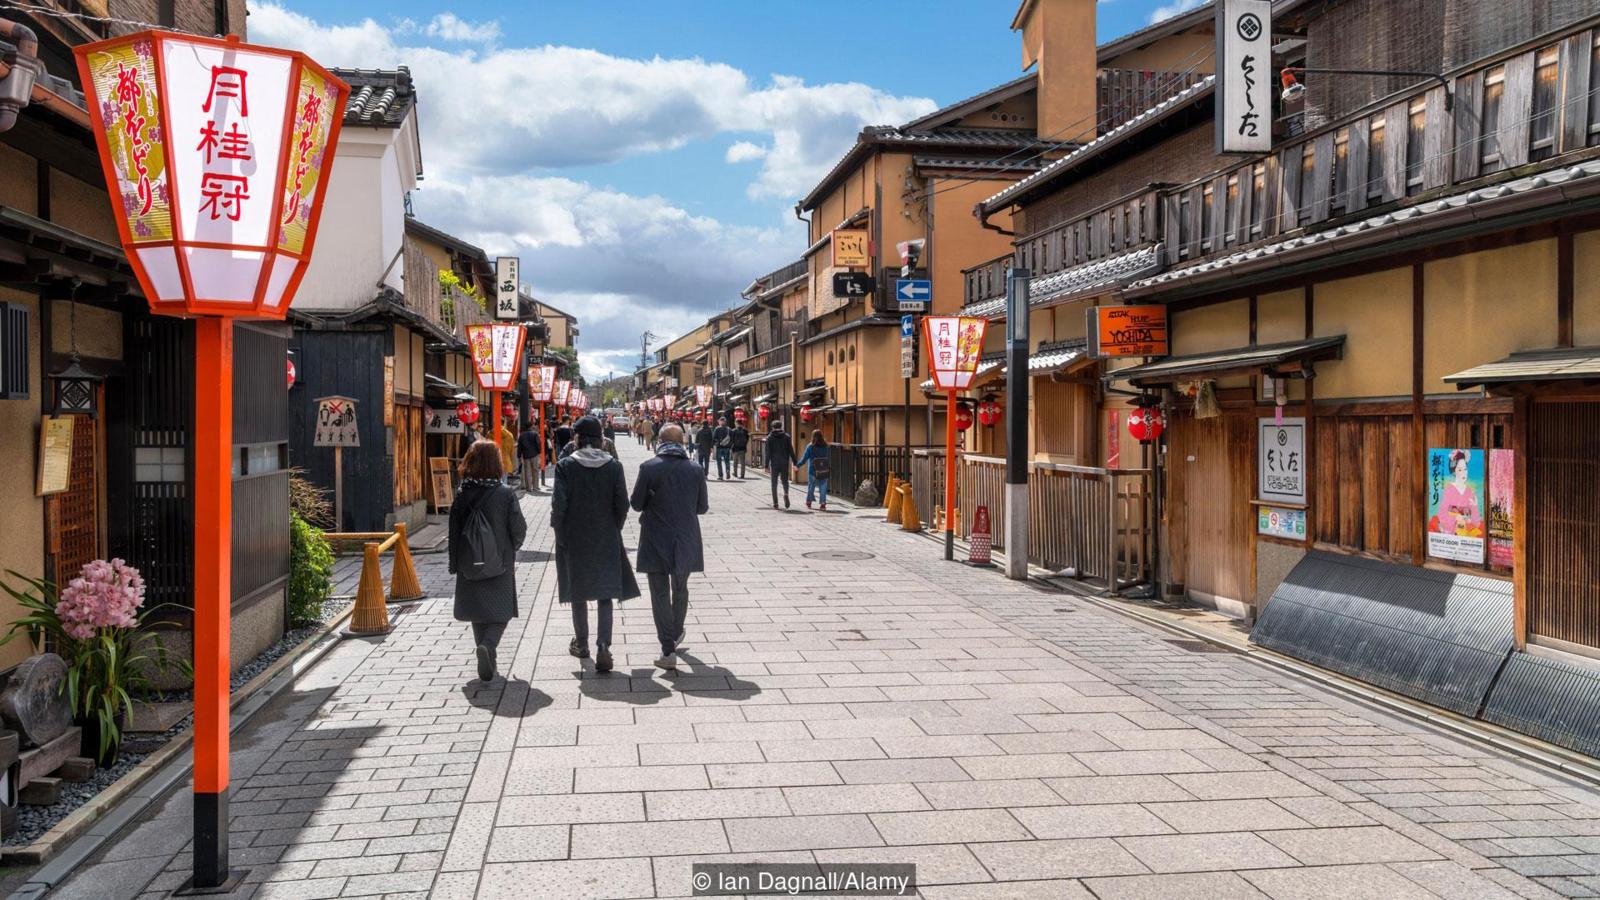 Bạn đã bao giờ mơ ước có một cuộc sống siêu sạch như người Nhật Bản chưa? Với những bức ảnh này, bạn có thể nhìn thấy cảnh đường phố Nhật Bản luôn sạch sẽ và rất gọn gàng. Không cần phải đi đâu xa, bạn chỉ cần nhấp vào và chiêm ngưỡng nhận thức về lối sống sạch nhất thế giới.